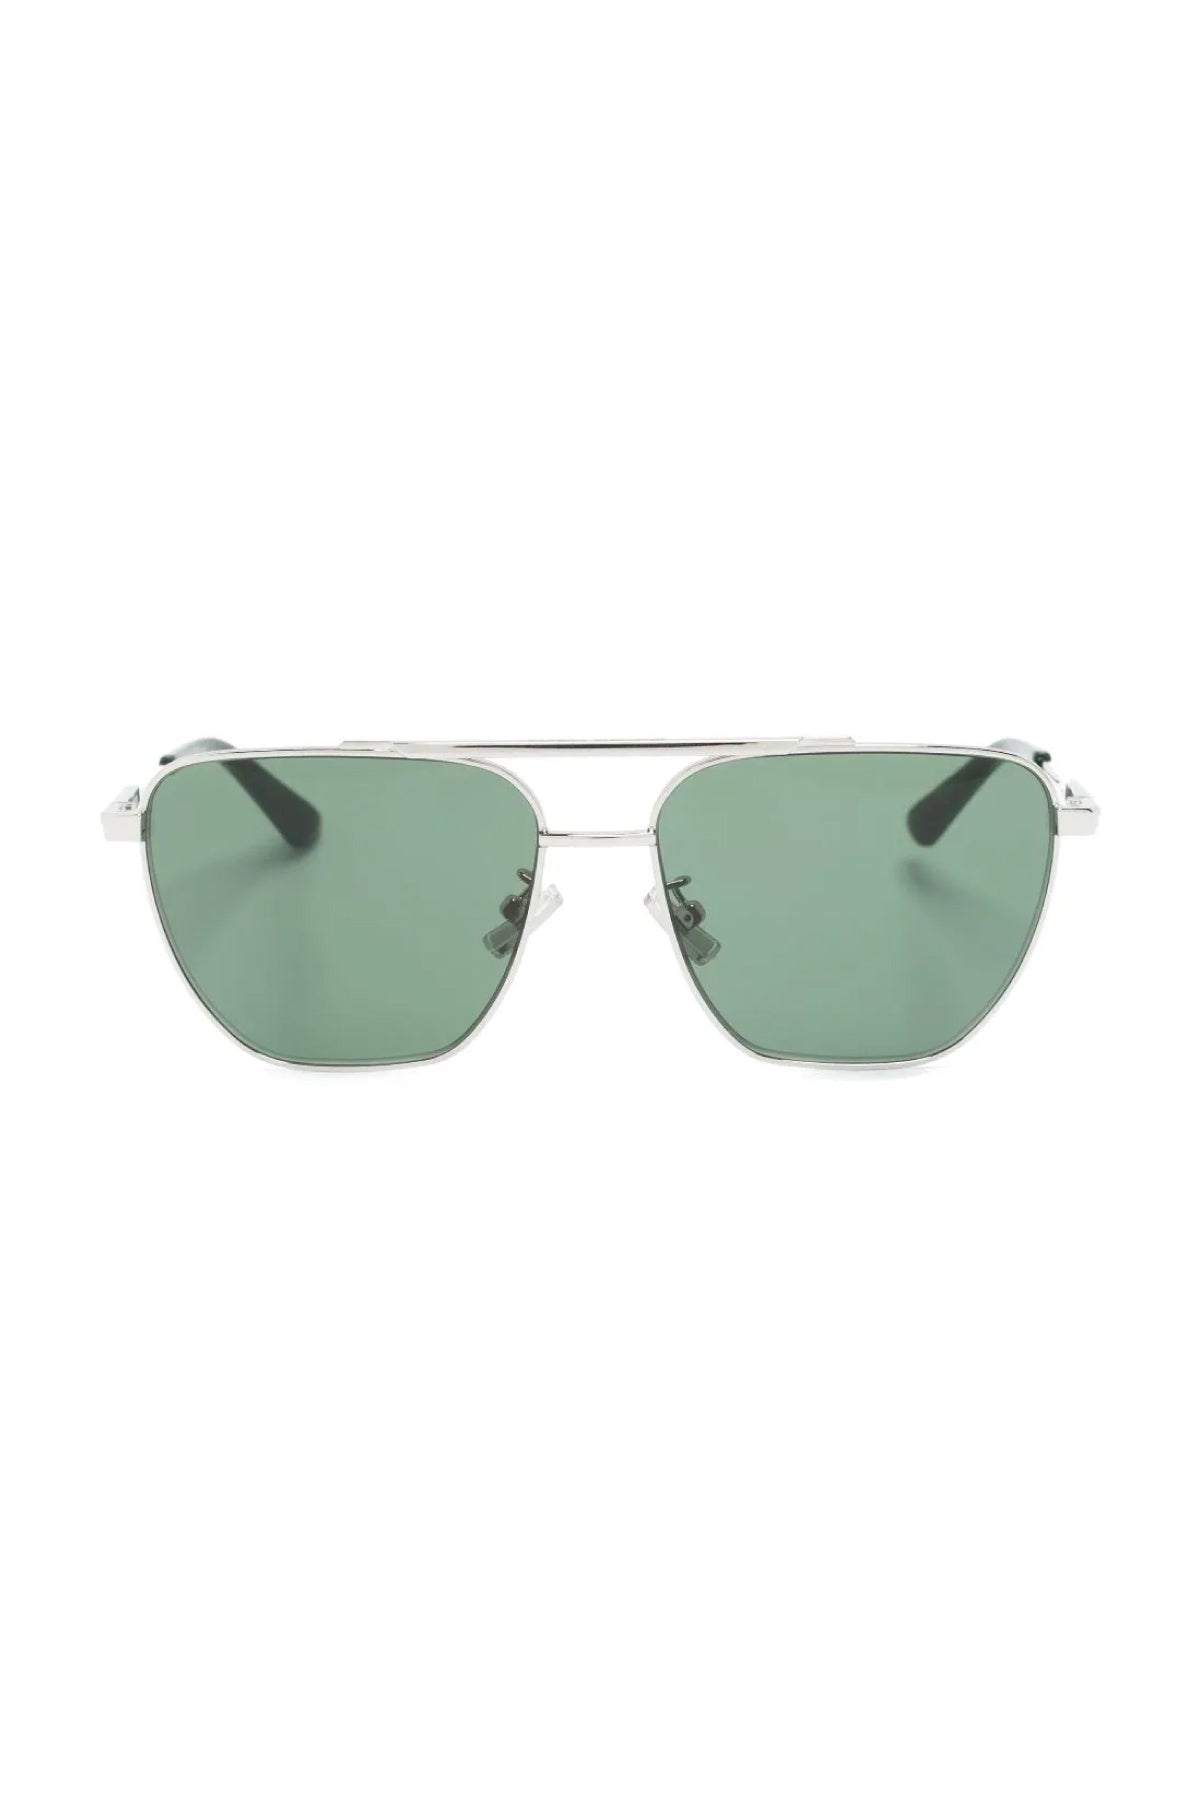 Bottega Veneta Aviator Sunglasses - Silver